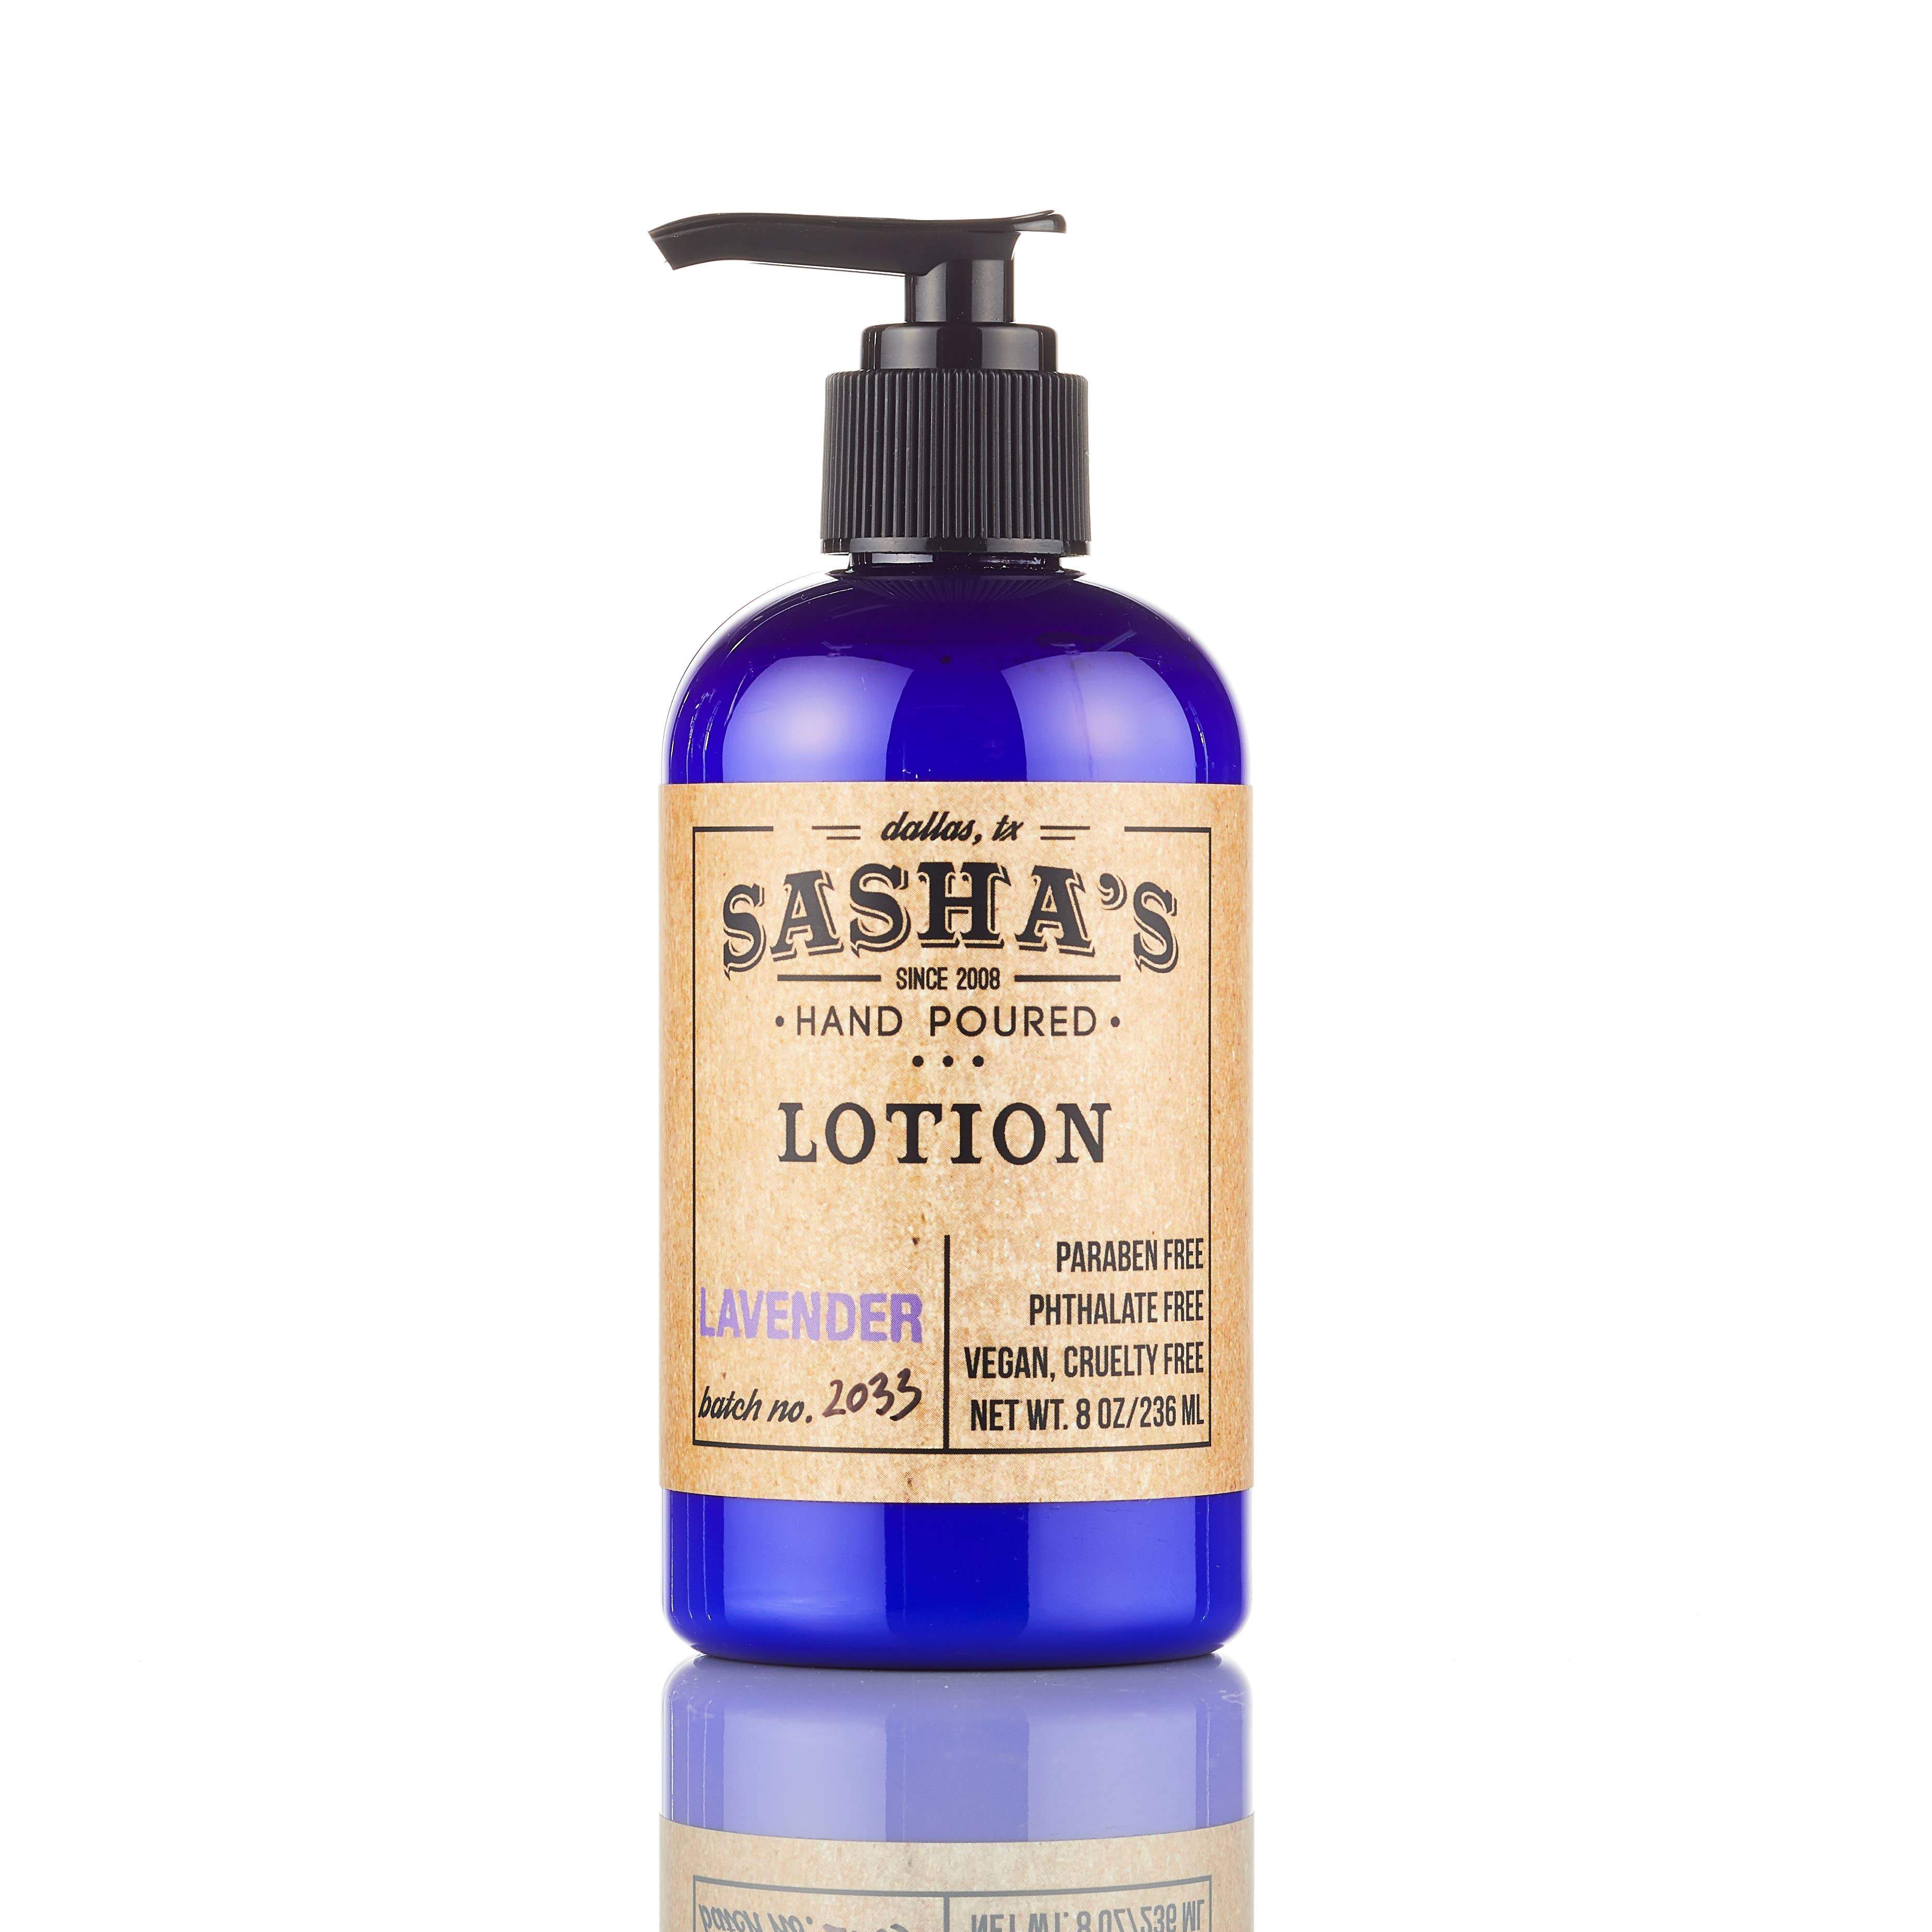 Sasha's Hand Poured Bath and Body - Loción Los más vendidos